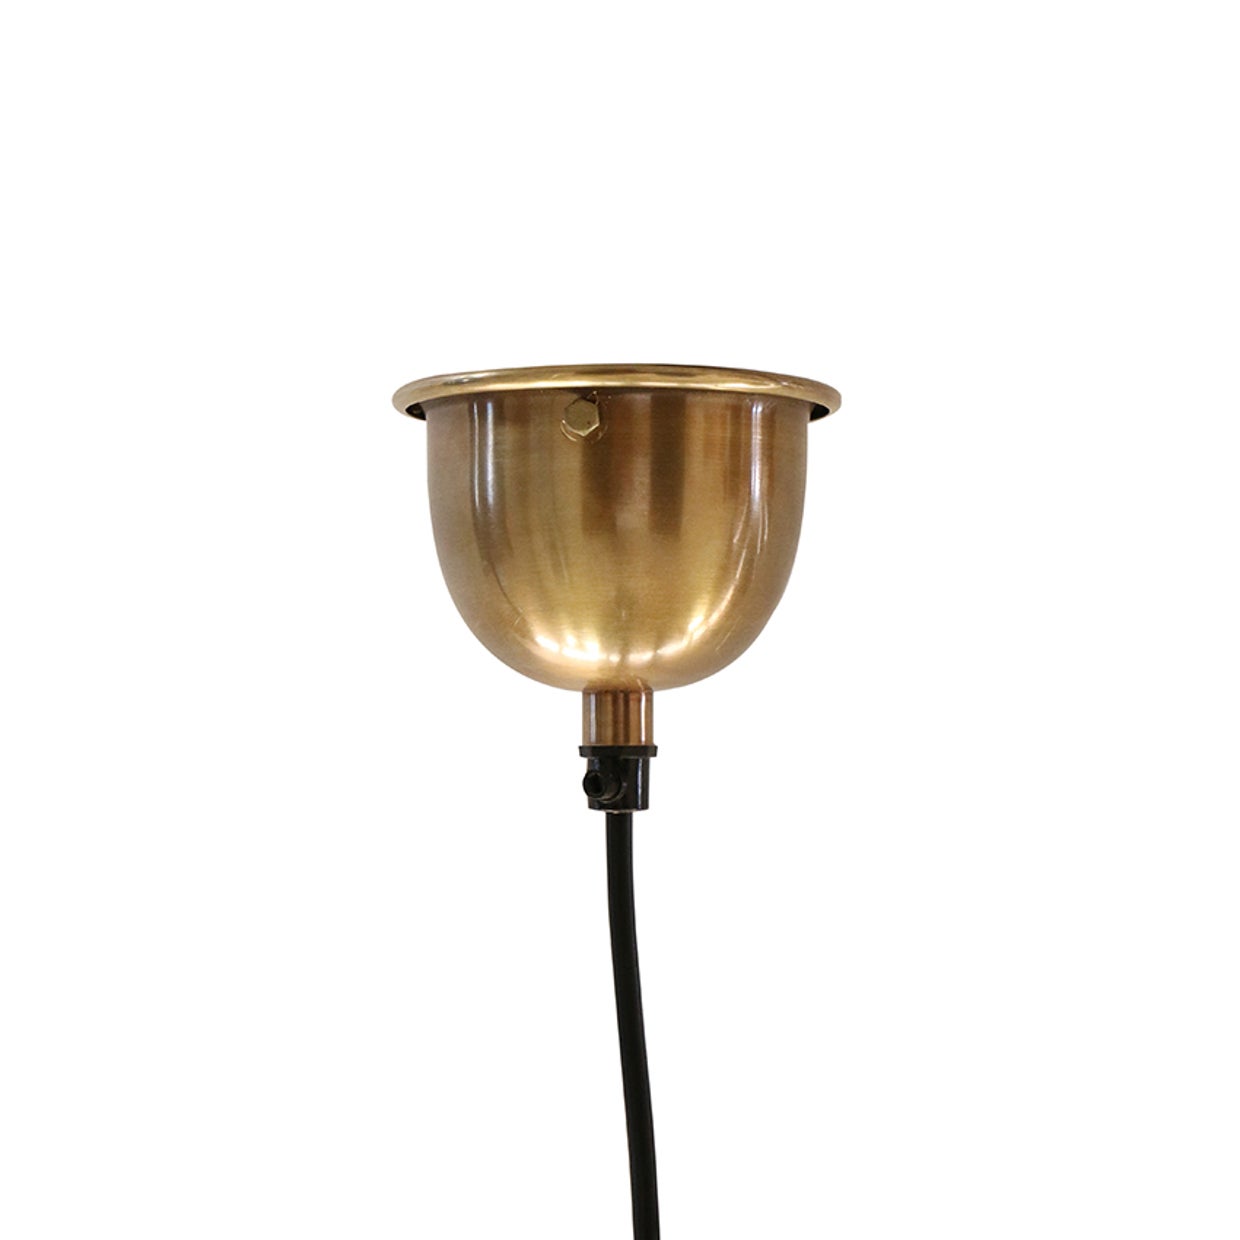 Vitrene Small Brass & Glass Hanging Light 28cm Dia